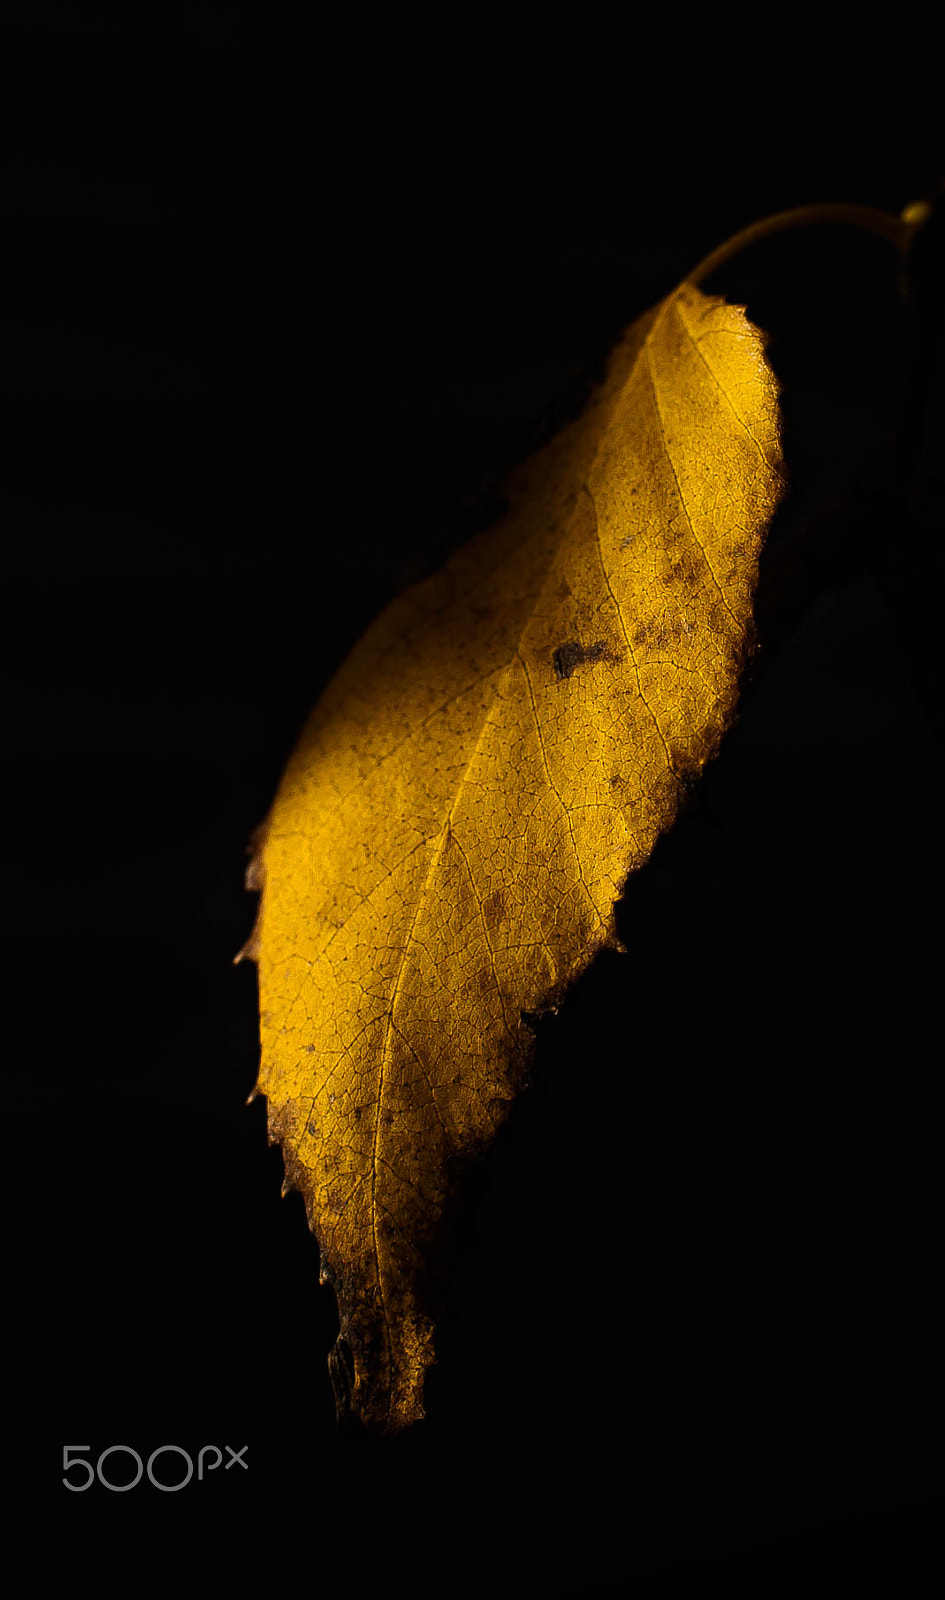 Canon EOS 5D sample photo. Fall season photography